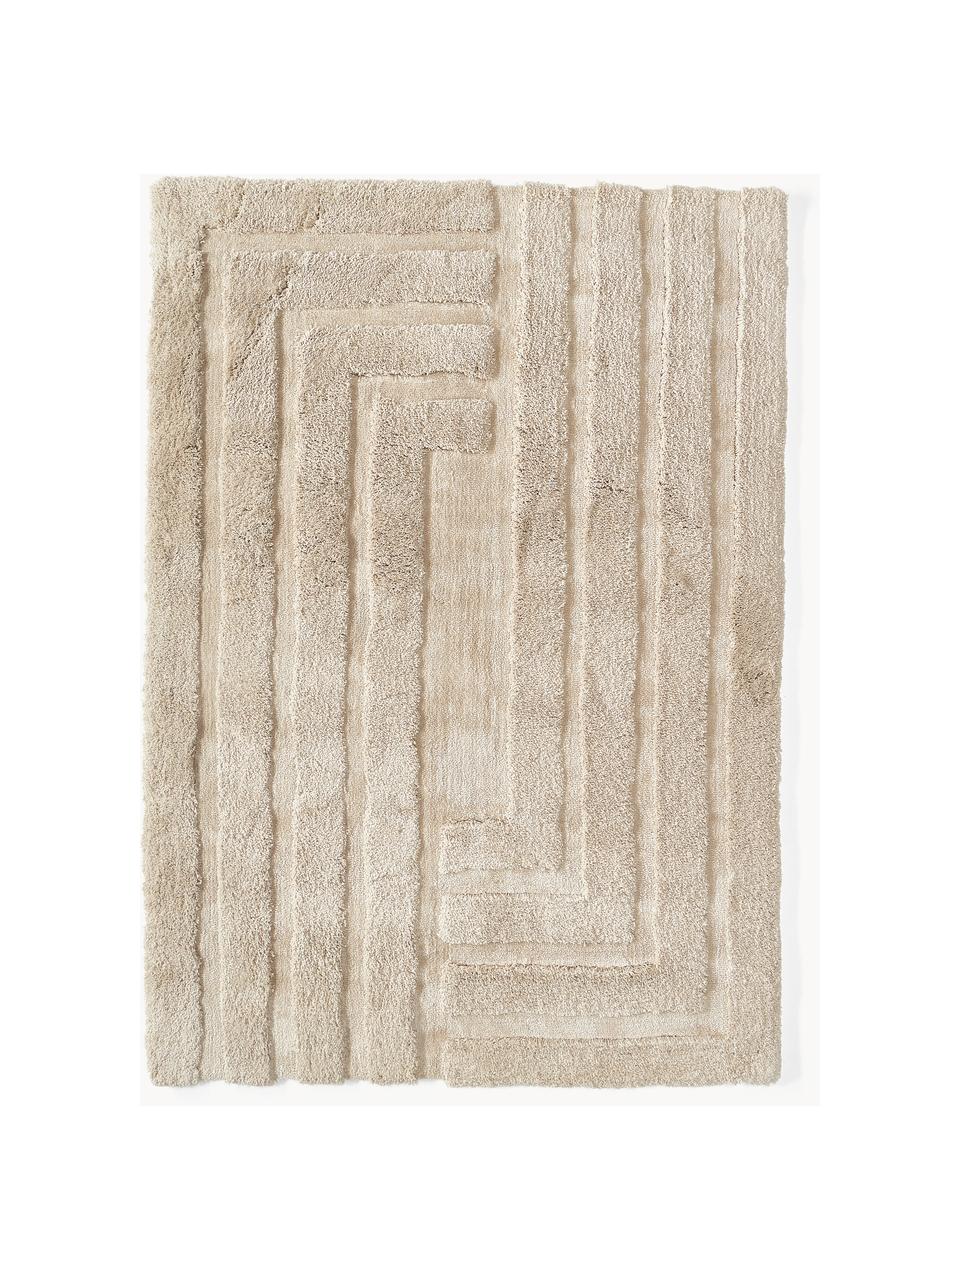 Načechraný koberec s vysokým vlasem a strukturovaným povrchem Genève, Světle béžová, Š 80 cm, D 150 cm (velikost XS)